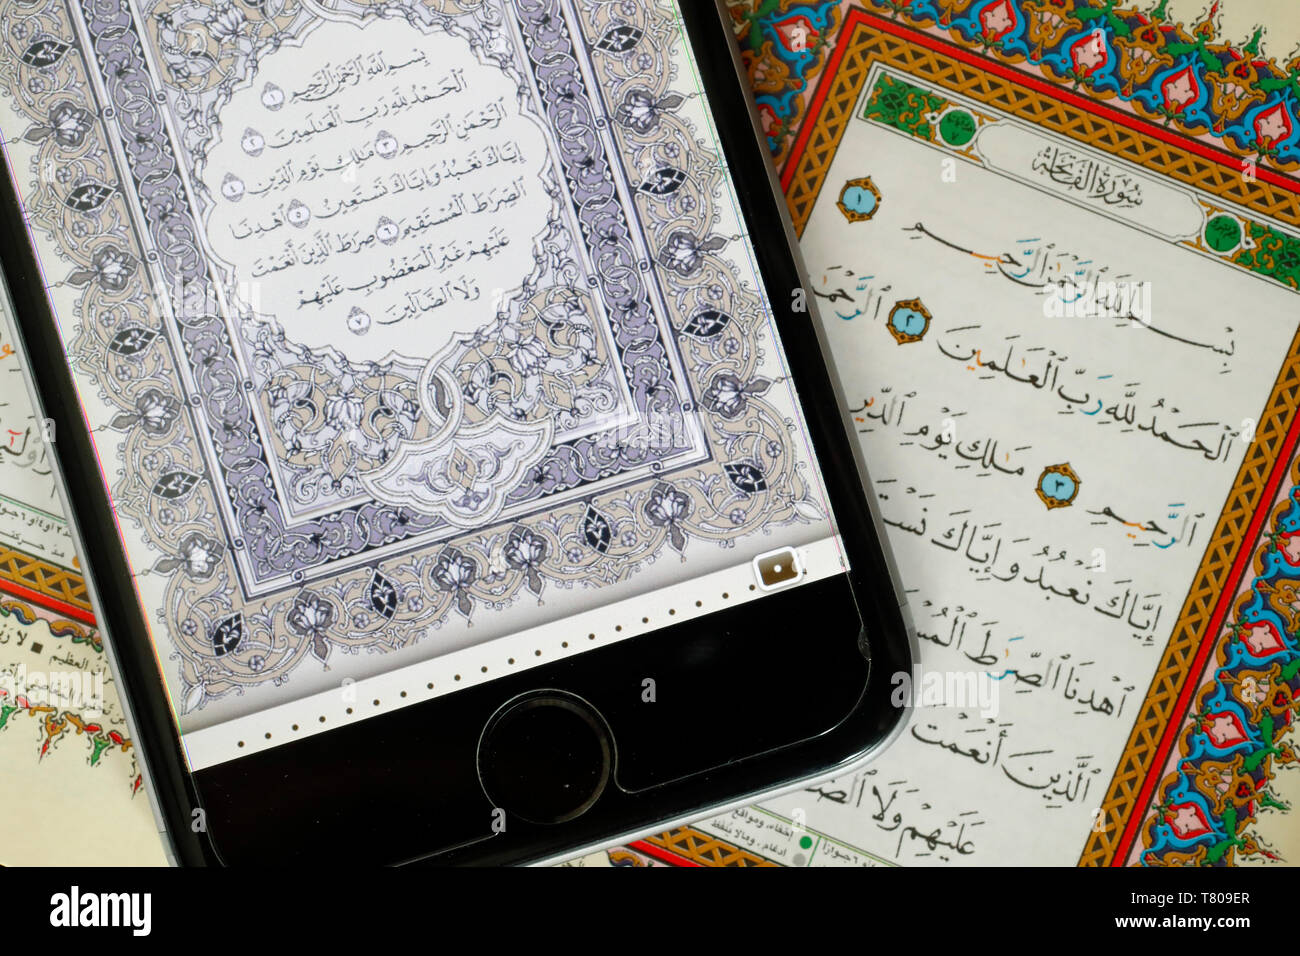 Digitale der Qur'an ein Smartphone und heiligen Quran, Sure al-Fatiah, das erste Kapitel, Vietnam, Indochina, Südostasien, Asien Stockfoto